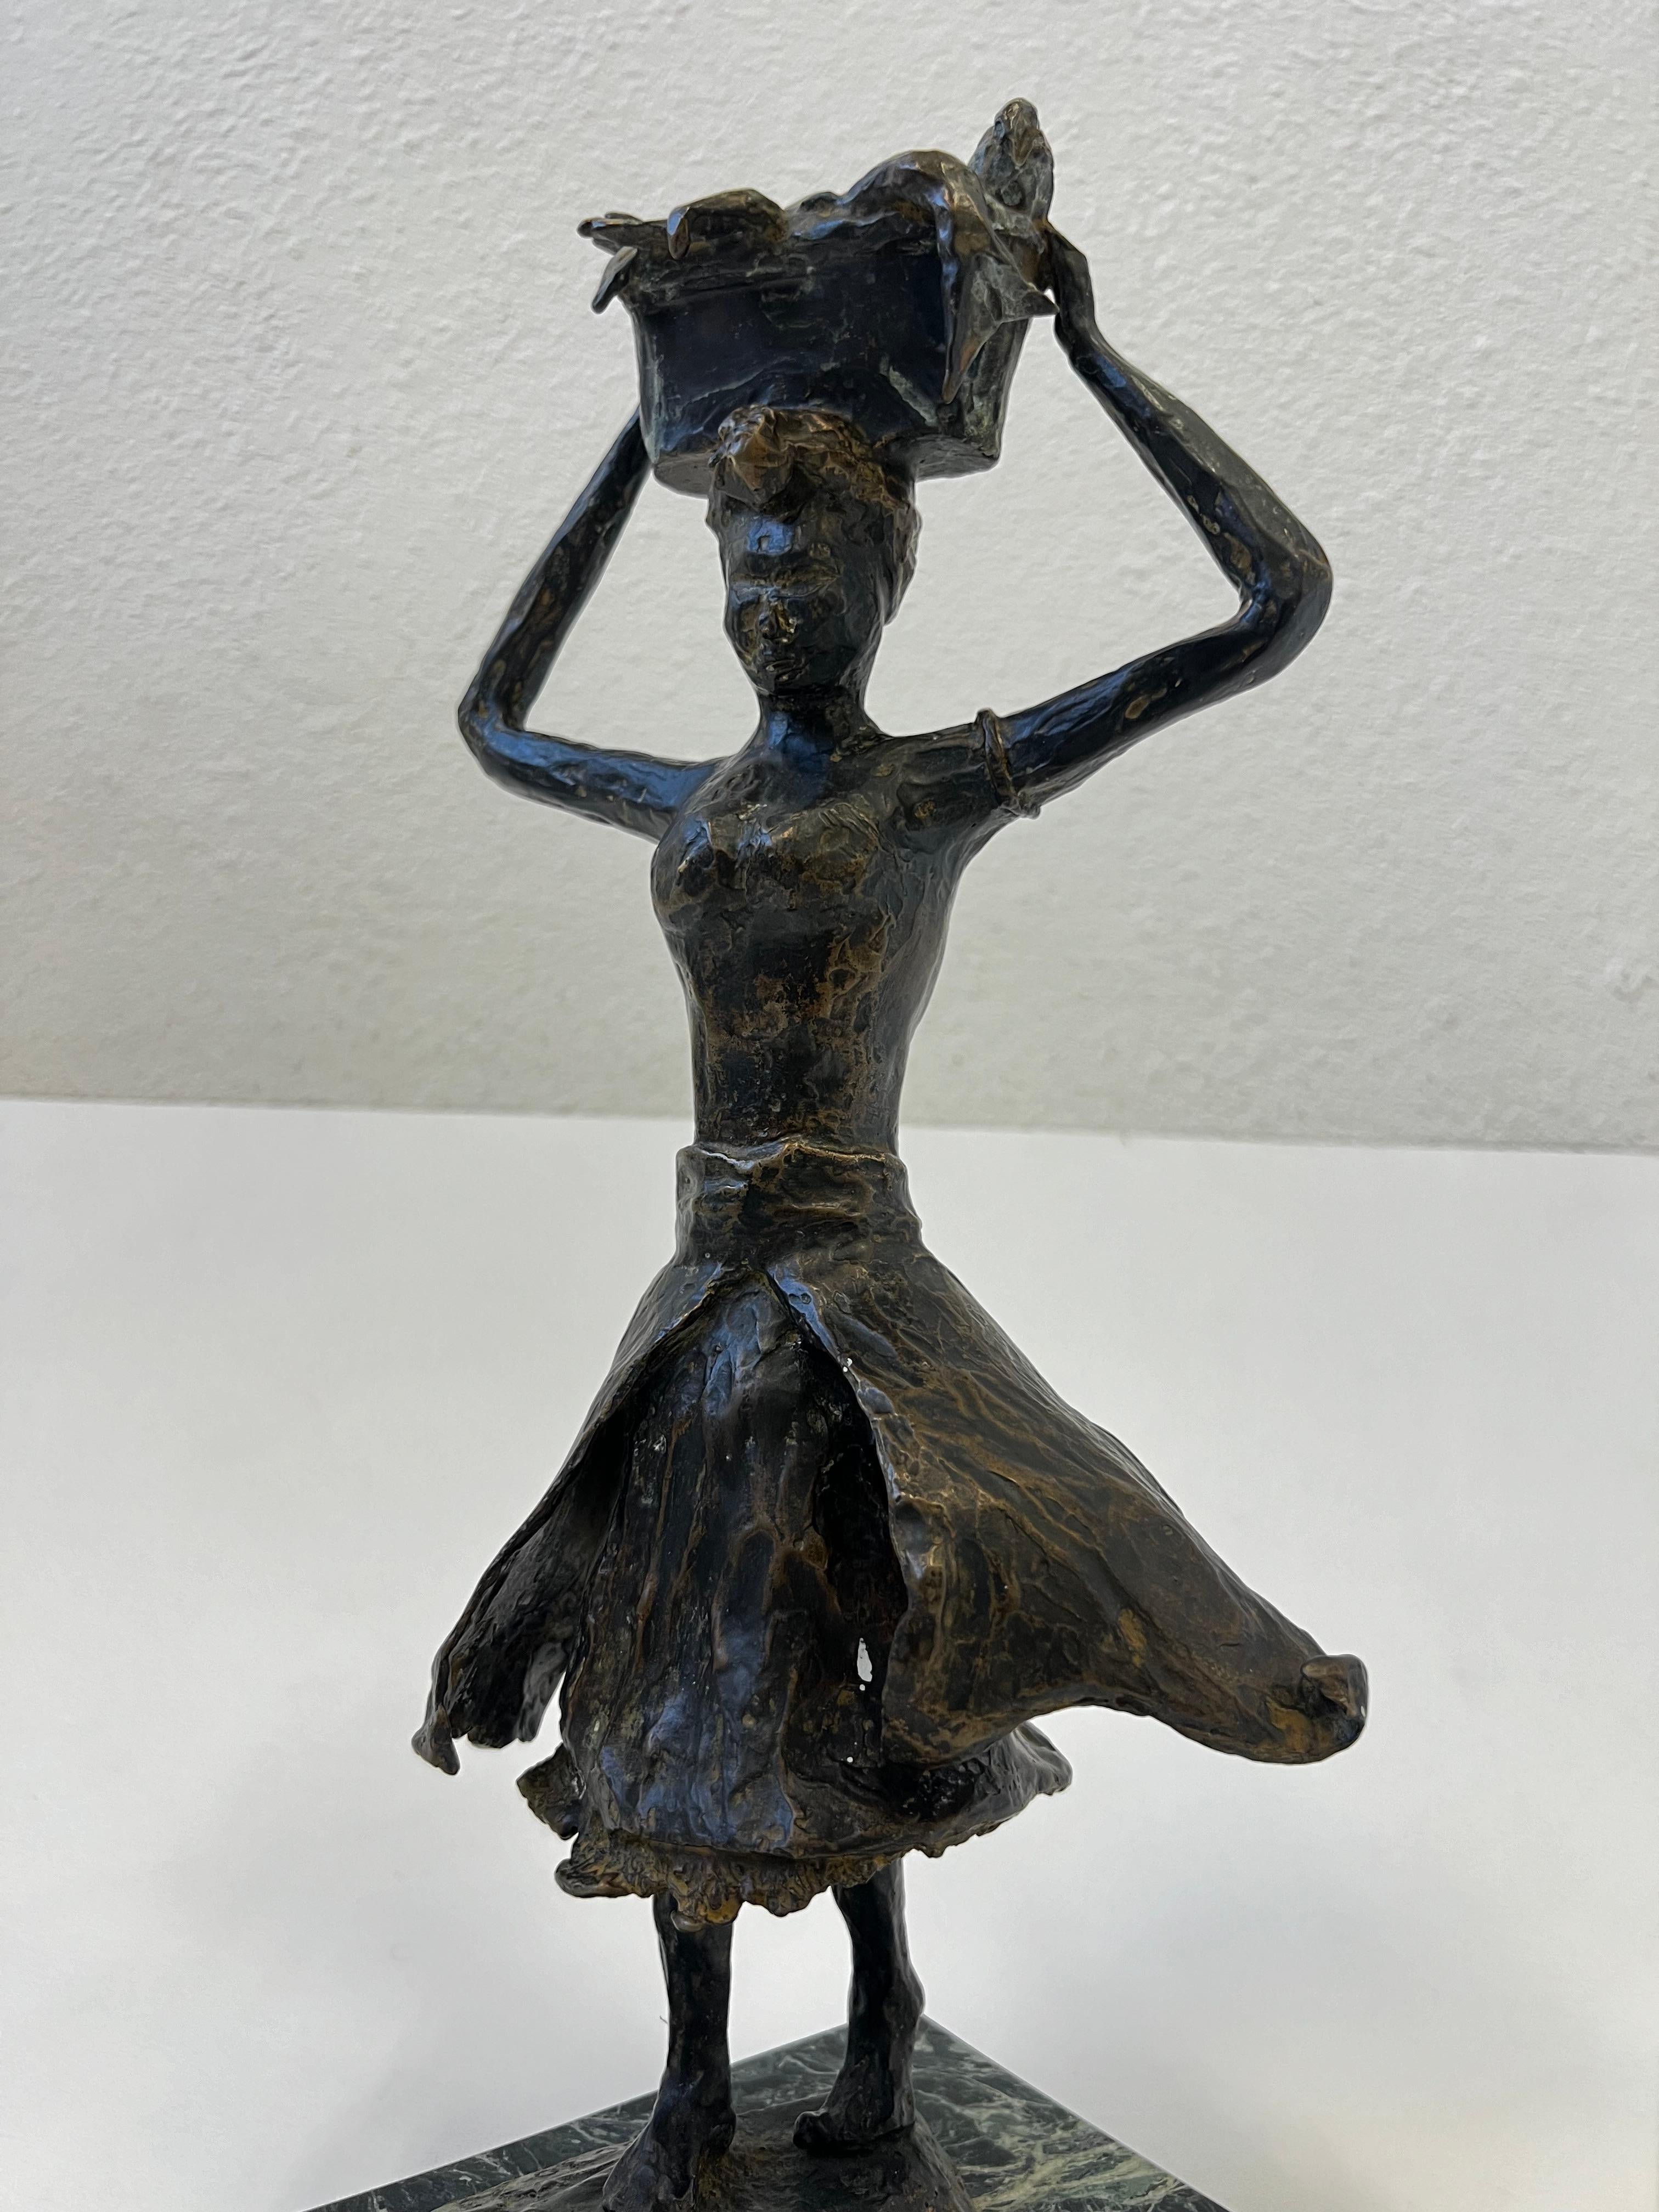 Belle sculpture espagnole en bronze coulé de 1973 représentant une femme marchant avec un panier de poissons sur la tête. 
Marqué W.N. Cardobo 73 (voir photo de détail). 
En bel état d'origine. 

Dimensions : 15